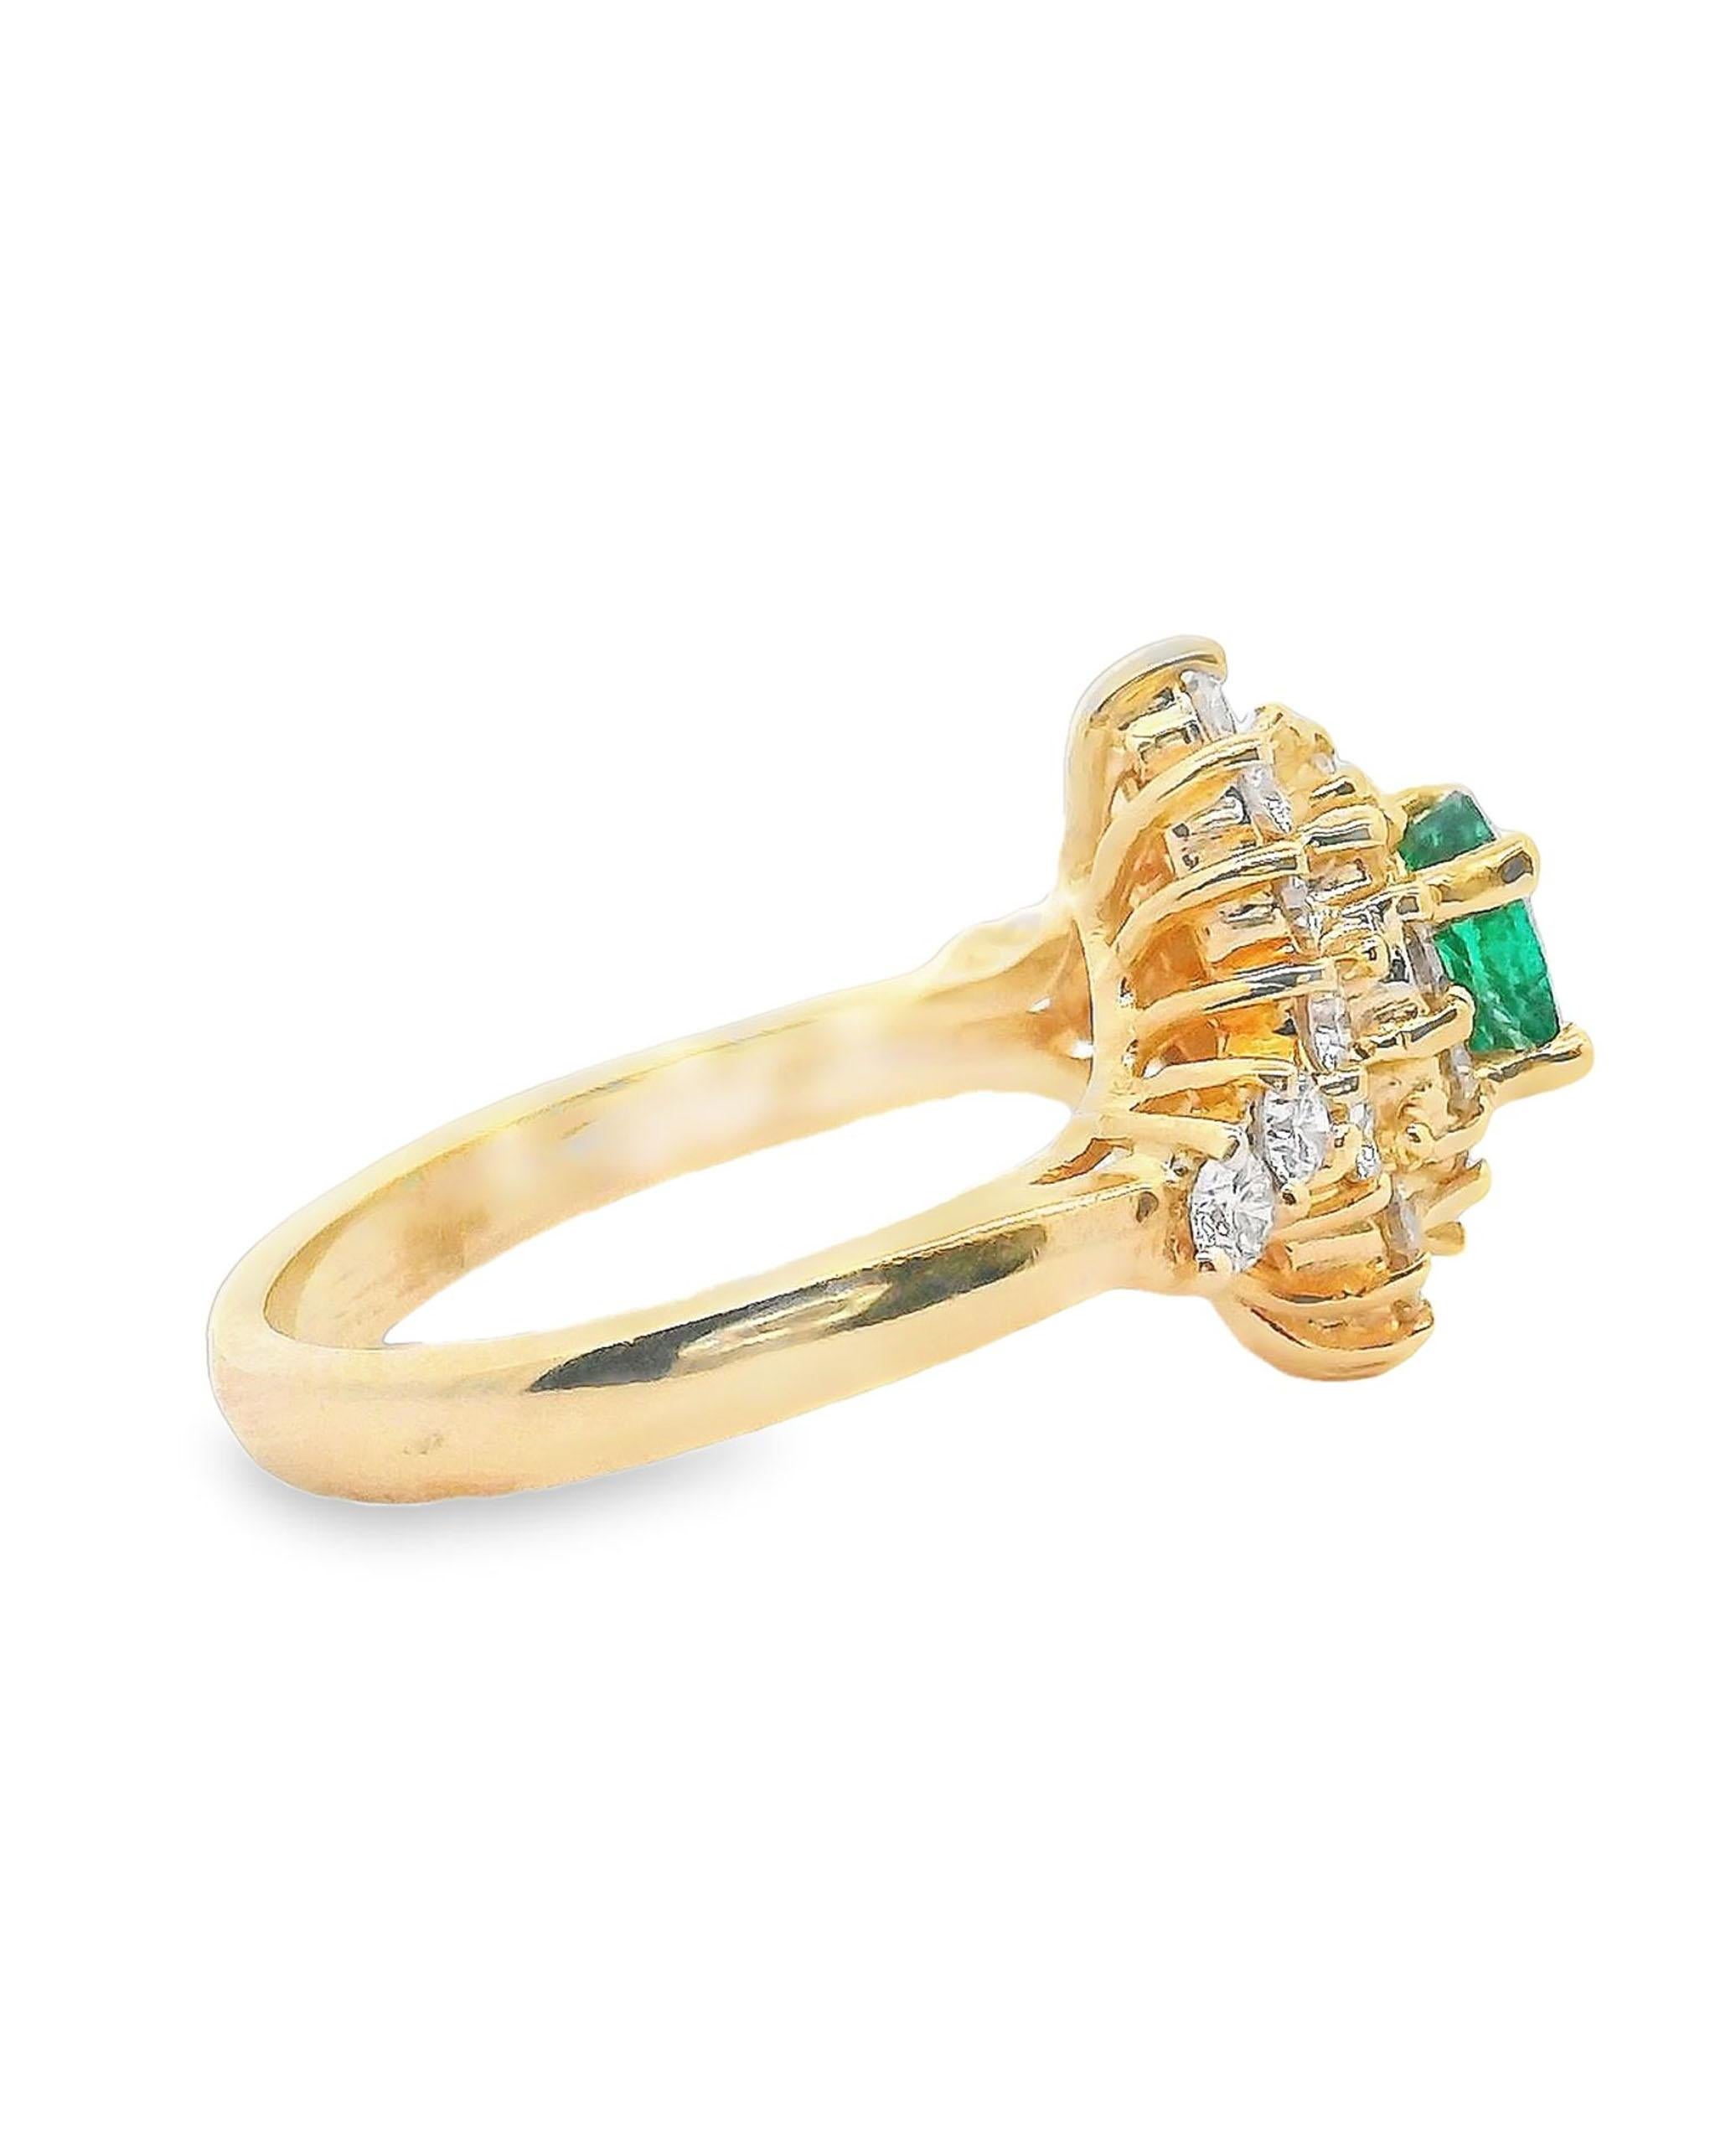 Gebrauchter Ring aus 14 Karat Gelbgold mit 28 runden Diamanten im Brillantschliff mit einem Gewicht von etwa 1,00 Karat (Farbe H, Reinheit VS). In der Mitte befindet sich ein ovaler Smaragd von feiner Qualität mit einem Gewicht von etwa 0,70